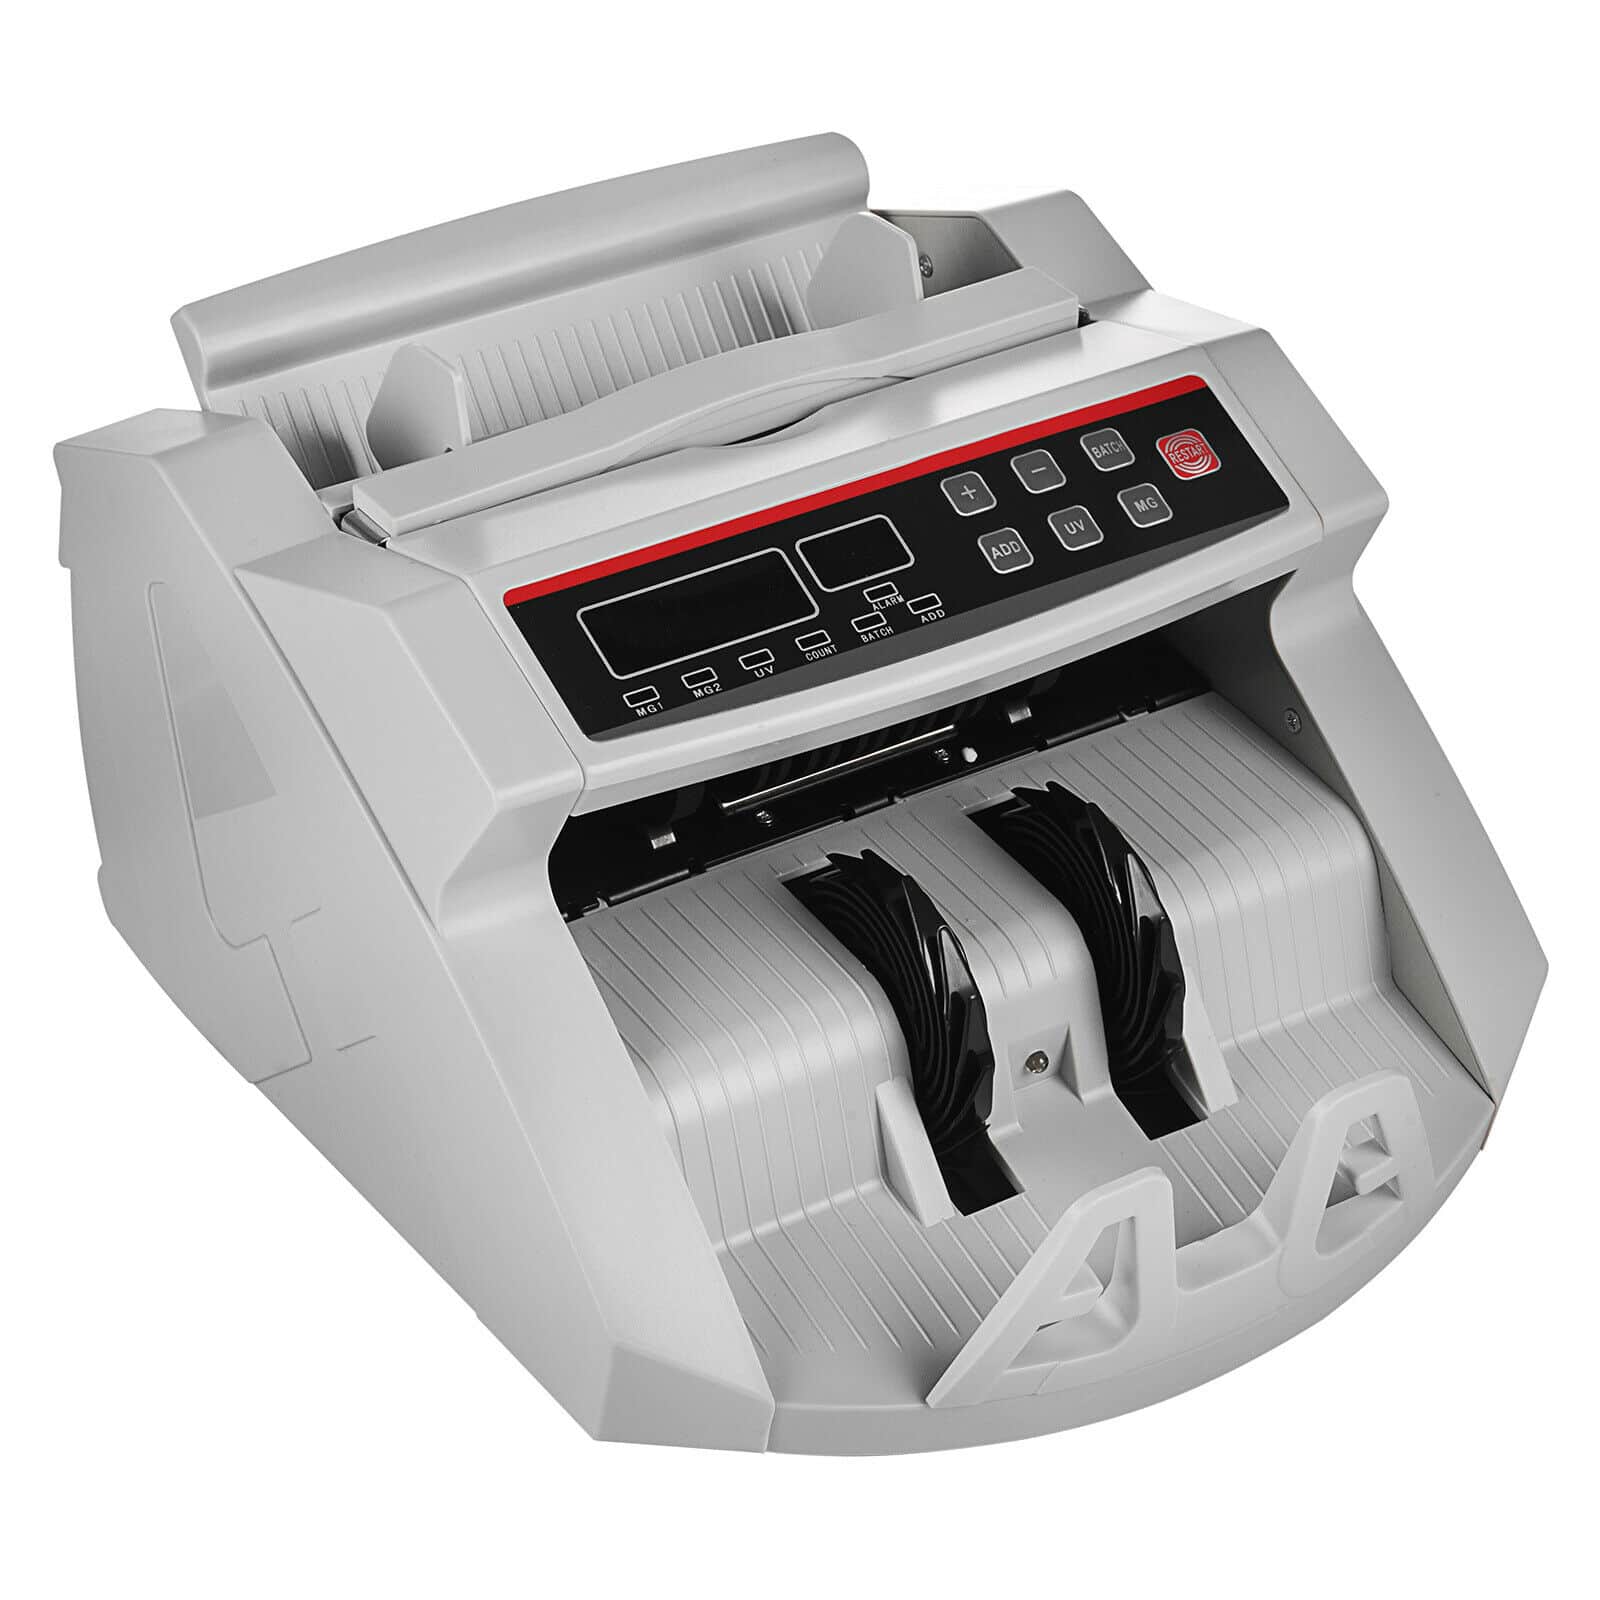  Máquina de conteo de billetes de mano con pantalla de 3  dígitos, velocidad de conteo rápida para contar dinero rápido y conveniente  : Productos de Oficina